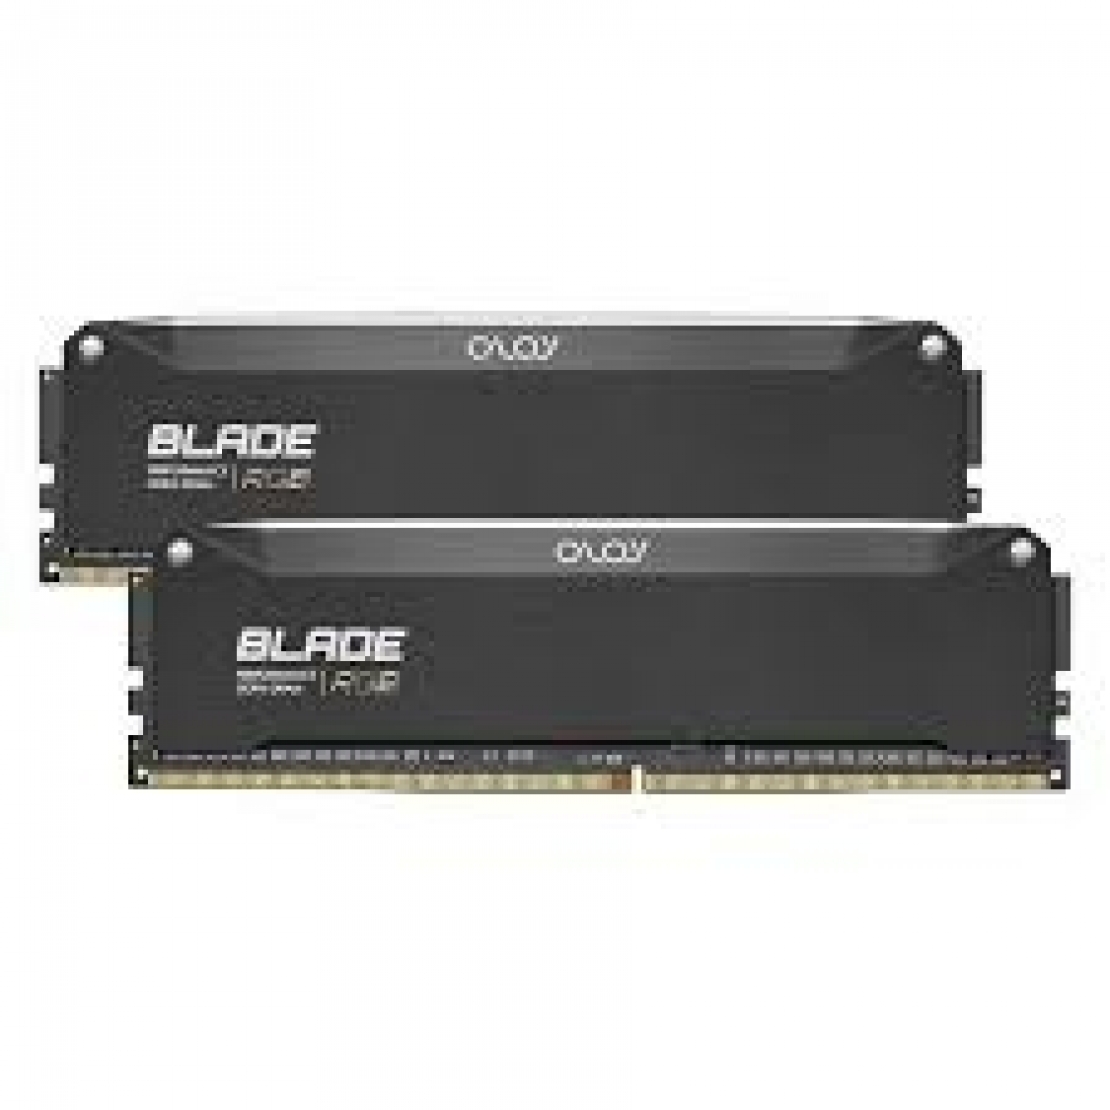 OLOY Blade Aura Sync RGB DDR4 RAM 16GB 2x8GB 3600MHz